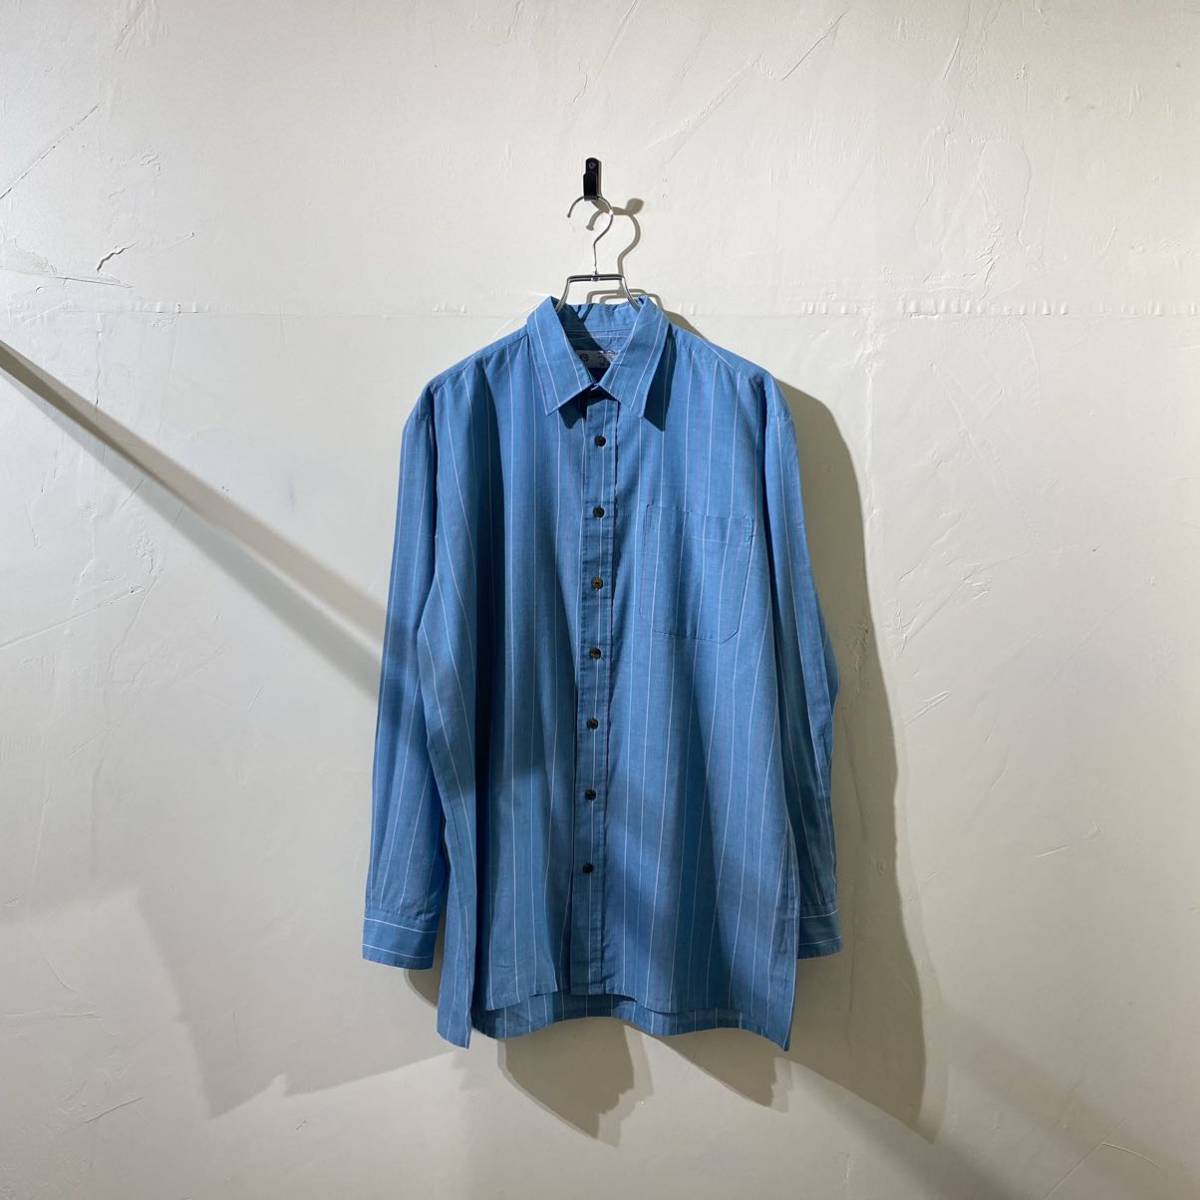 【海外限定】 ビンテージ ヨーロッパ古着 shirt blue stripe euro vintage 長袖シャツ 90s 80s ブルーシャツ ストライプシャツ Lサイズ